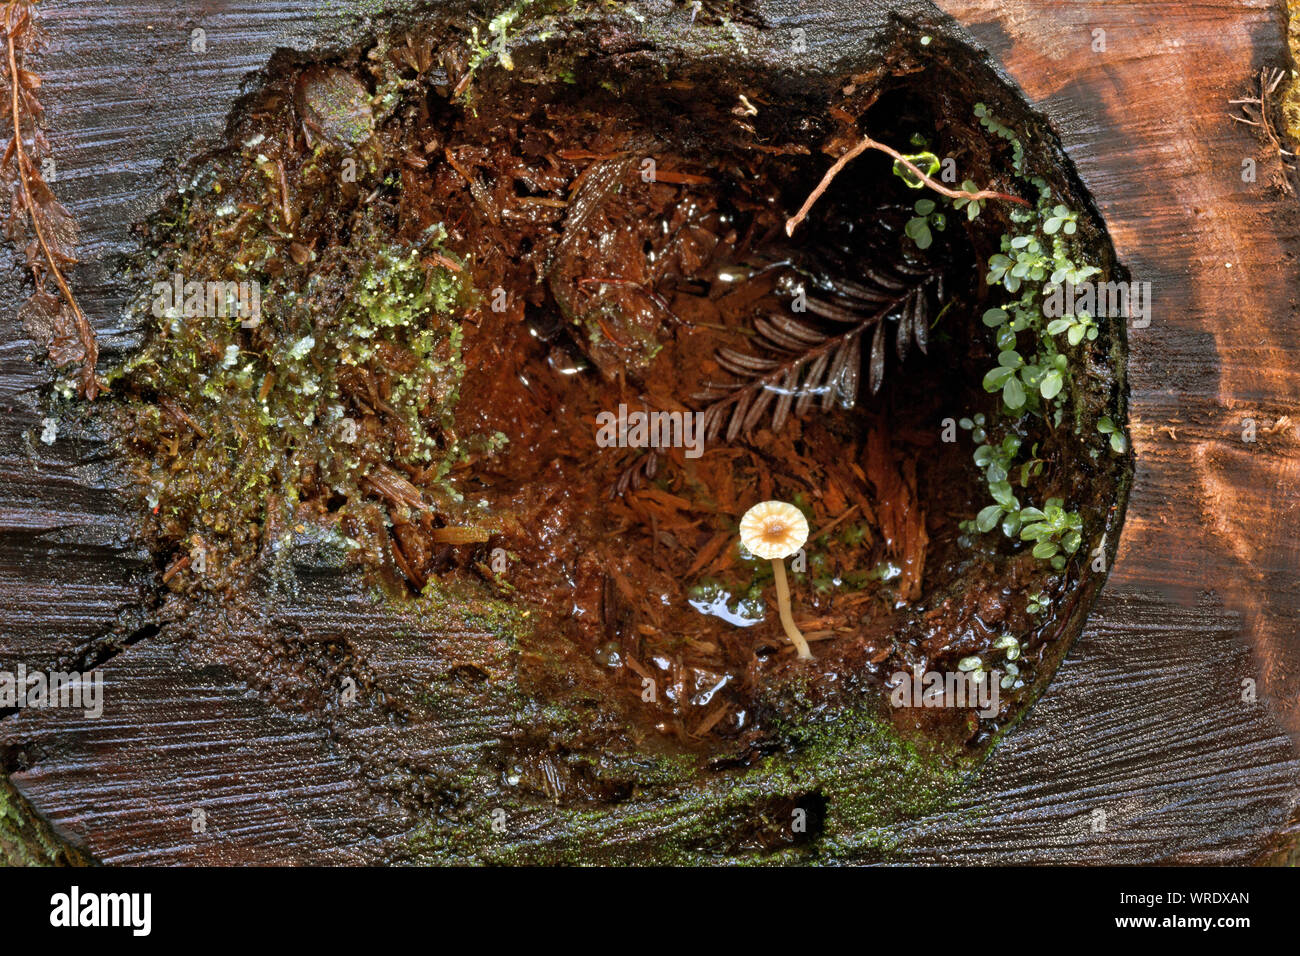 CA 03523-00 ... Kalifornien - eine natürlich geformte terrarium Moos,  Pflanzen, Alge und Pilz wachsen in einem cut Anmelden entlang der Seite des  Braunen Creek Tr Stockfotografie - Alamy